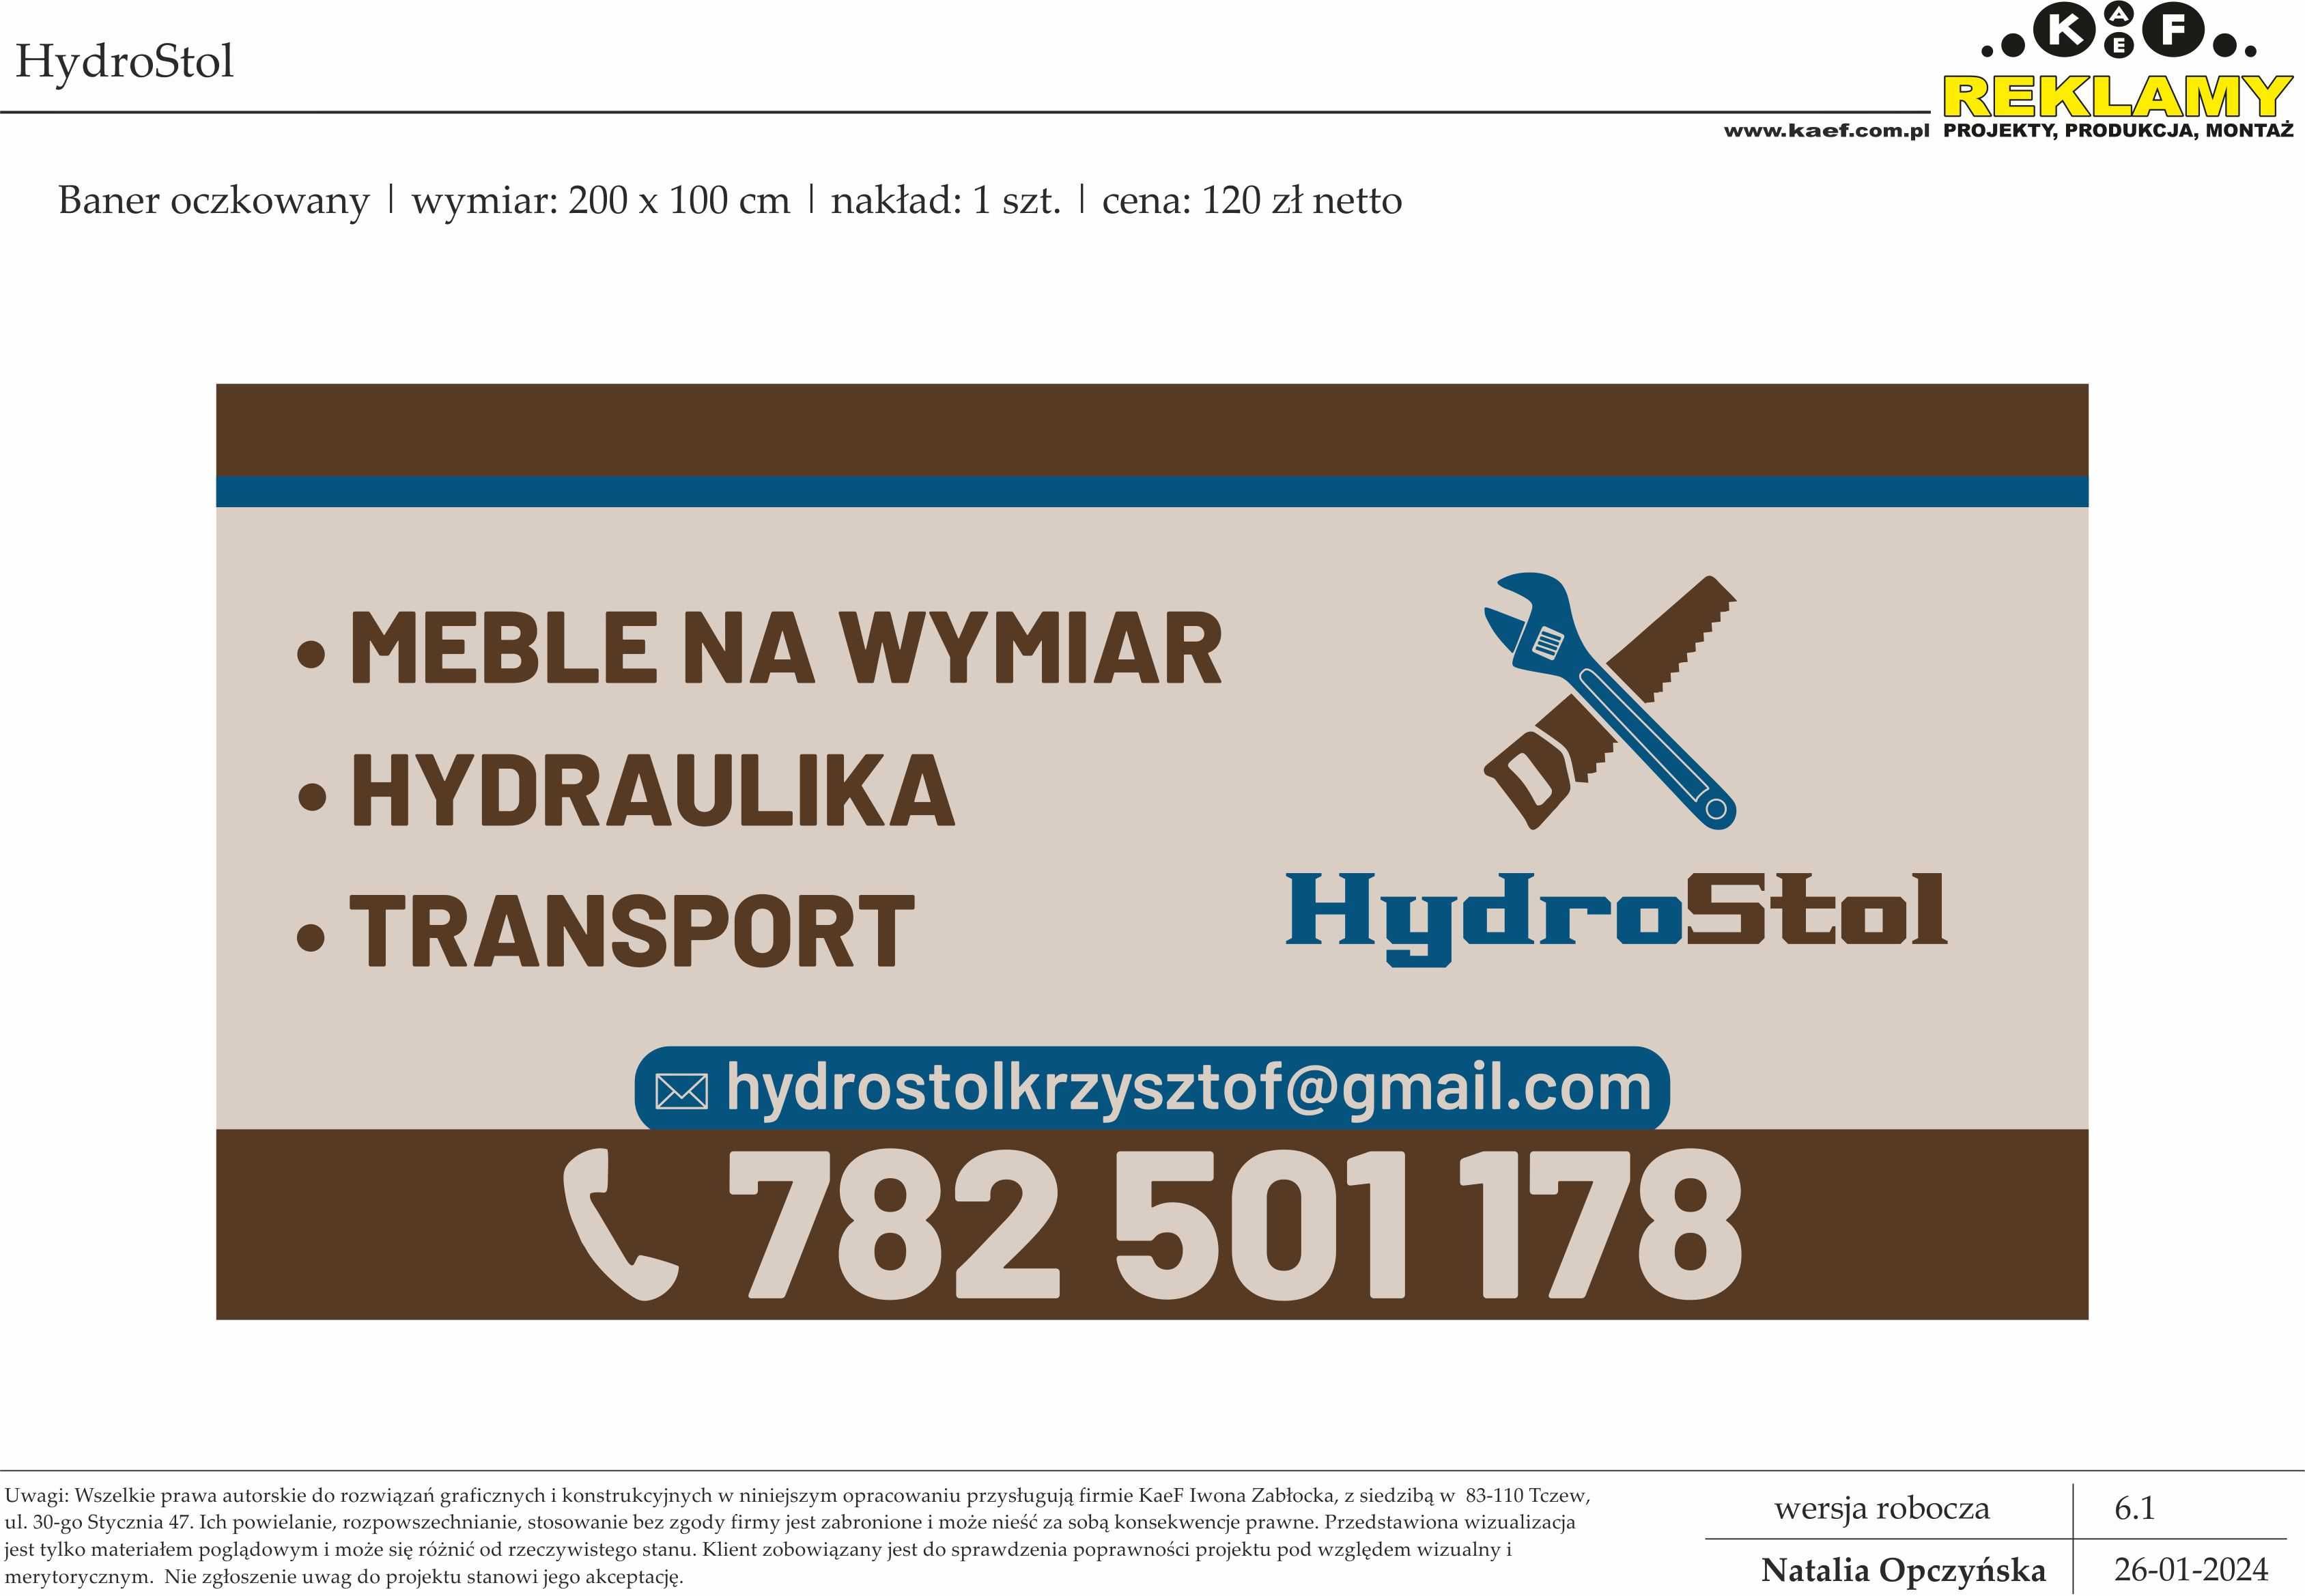 HydroStol - usługi hydrauliczne, stolarskie, transportowe